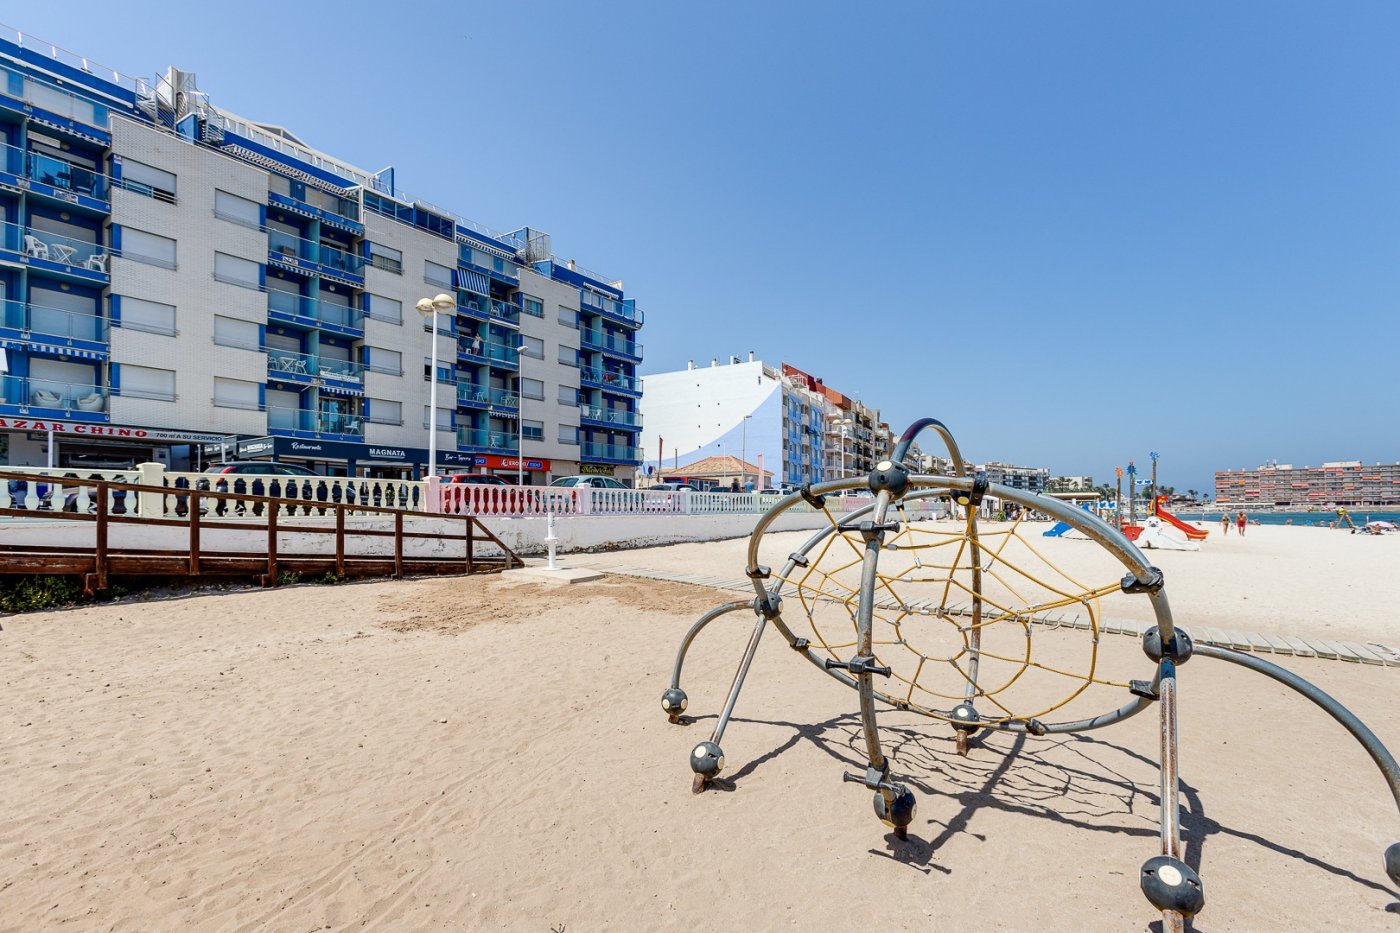 VERKOCHT! Vakantie appartement te koop in een schitterend complex aan het strand van Playa De Los Locos in Torrevieja.